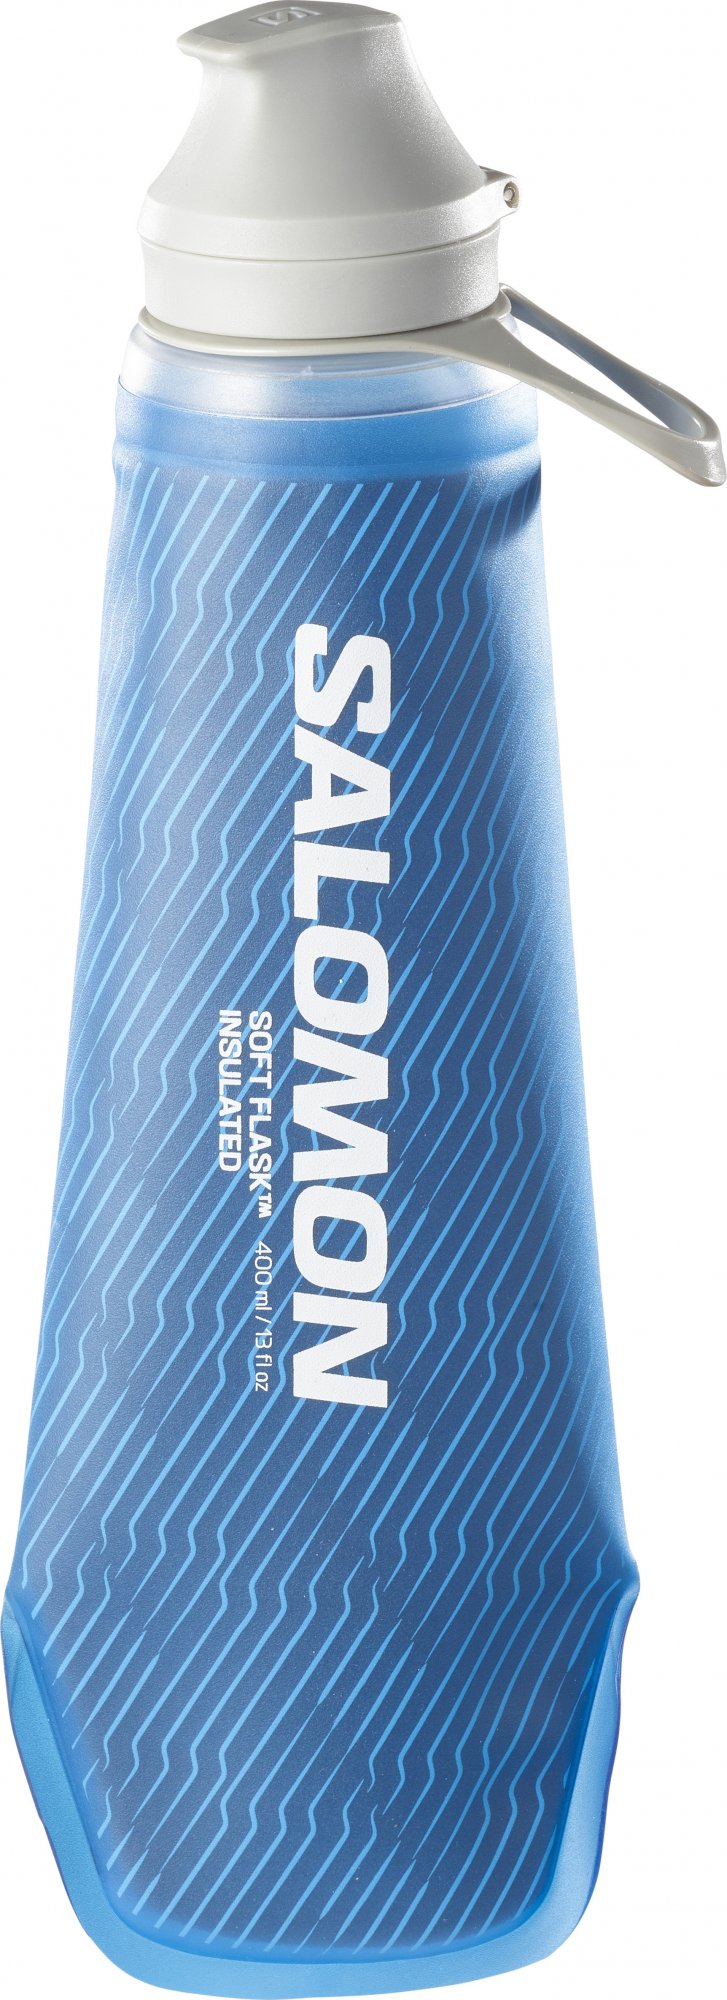 SALAMON SOFTFLASK 400/13 INSUL 42 Clear Blue